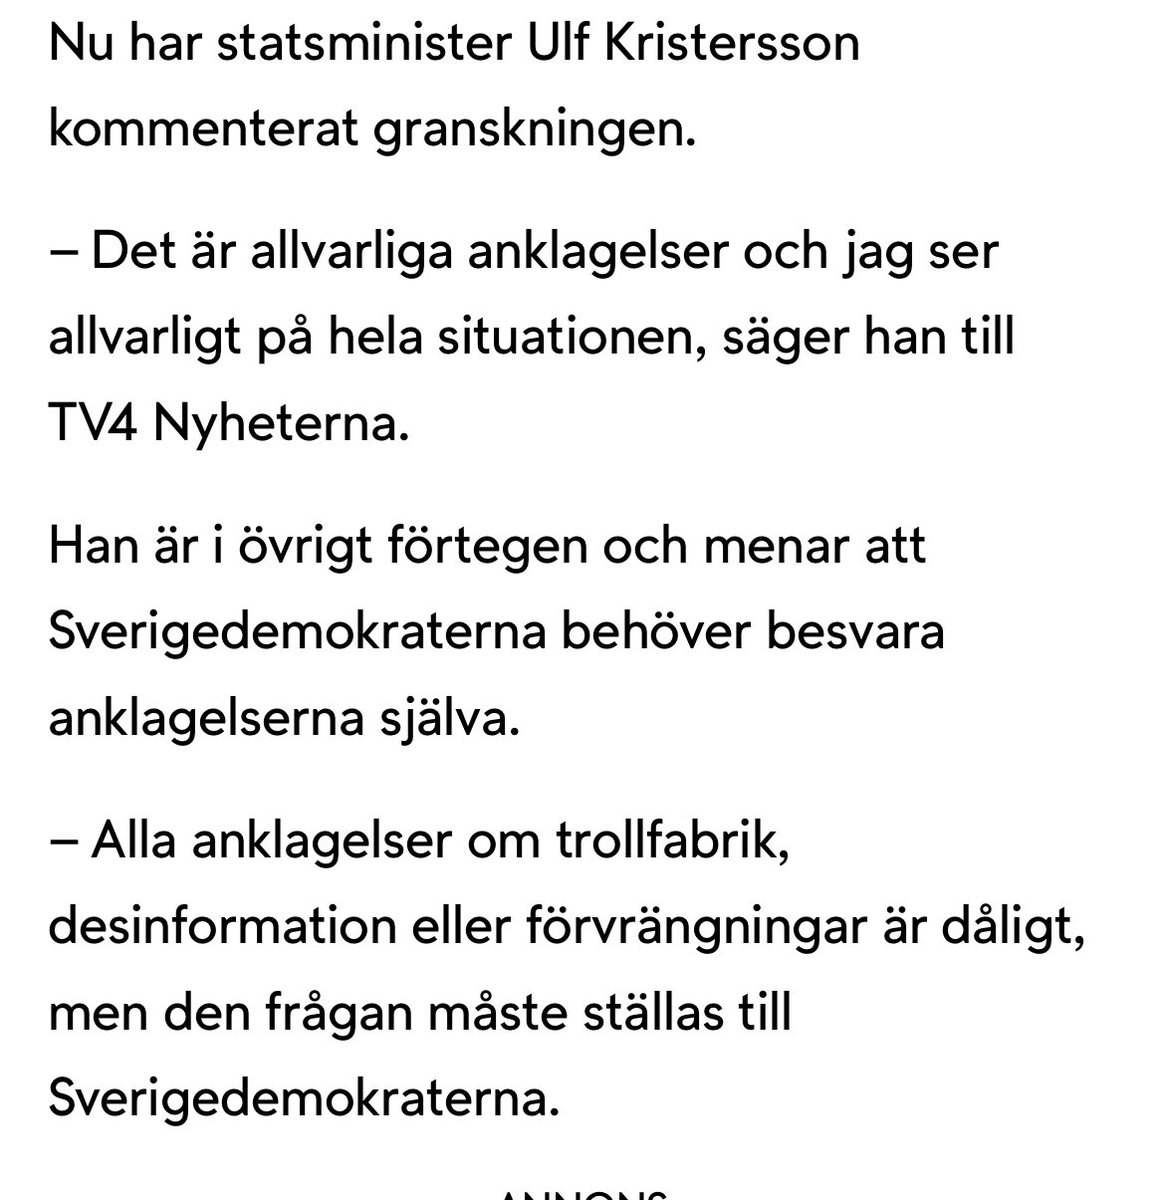 Statsminister Ulf Kristersson ser allvarligt på Kalla faktas avslöjande om att SD driver en så kallad trollfabrik. – Det ska alla partier hålla sig borta ifrån, säger han till TV4 Nyheterna. Jaha? Var det allt @UlfKristersson hade att säga?